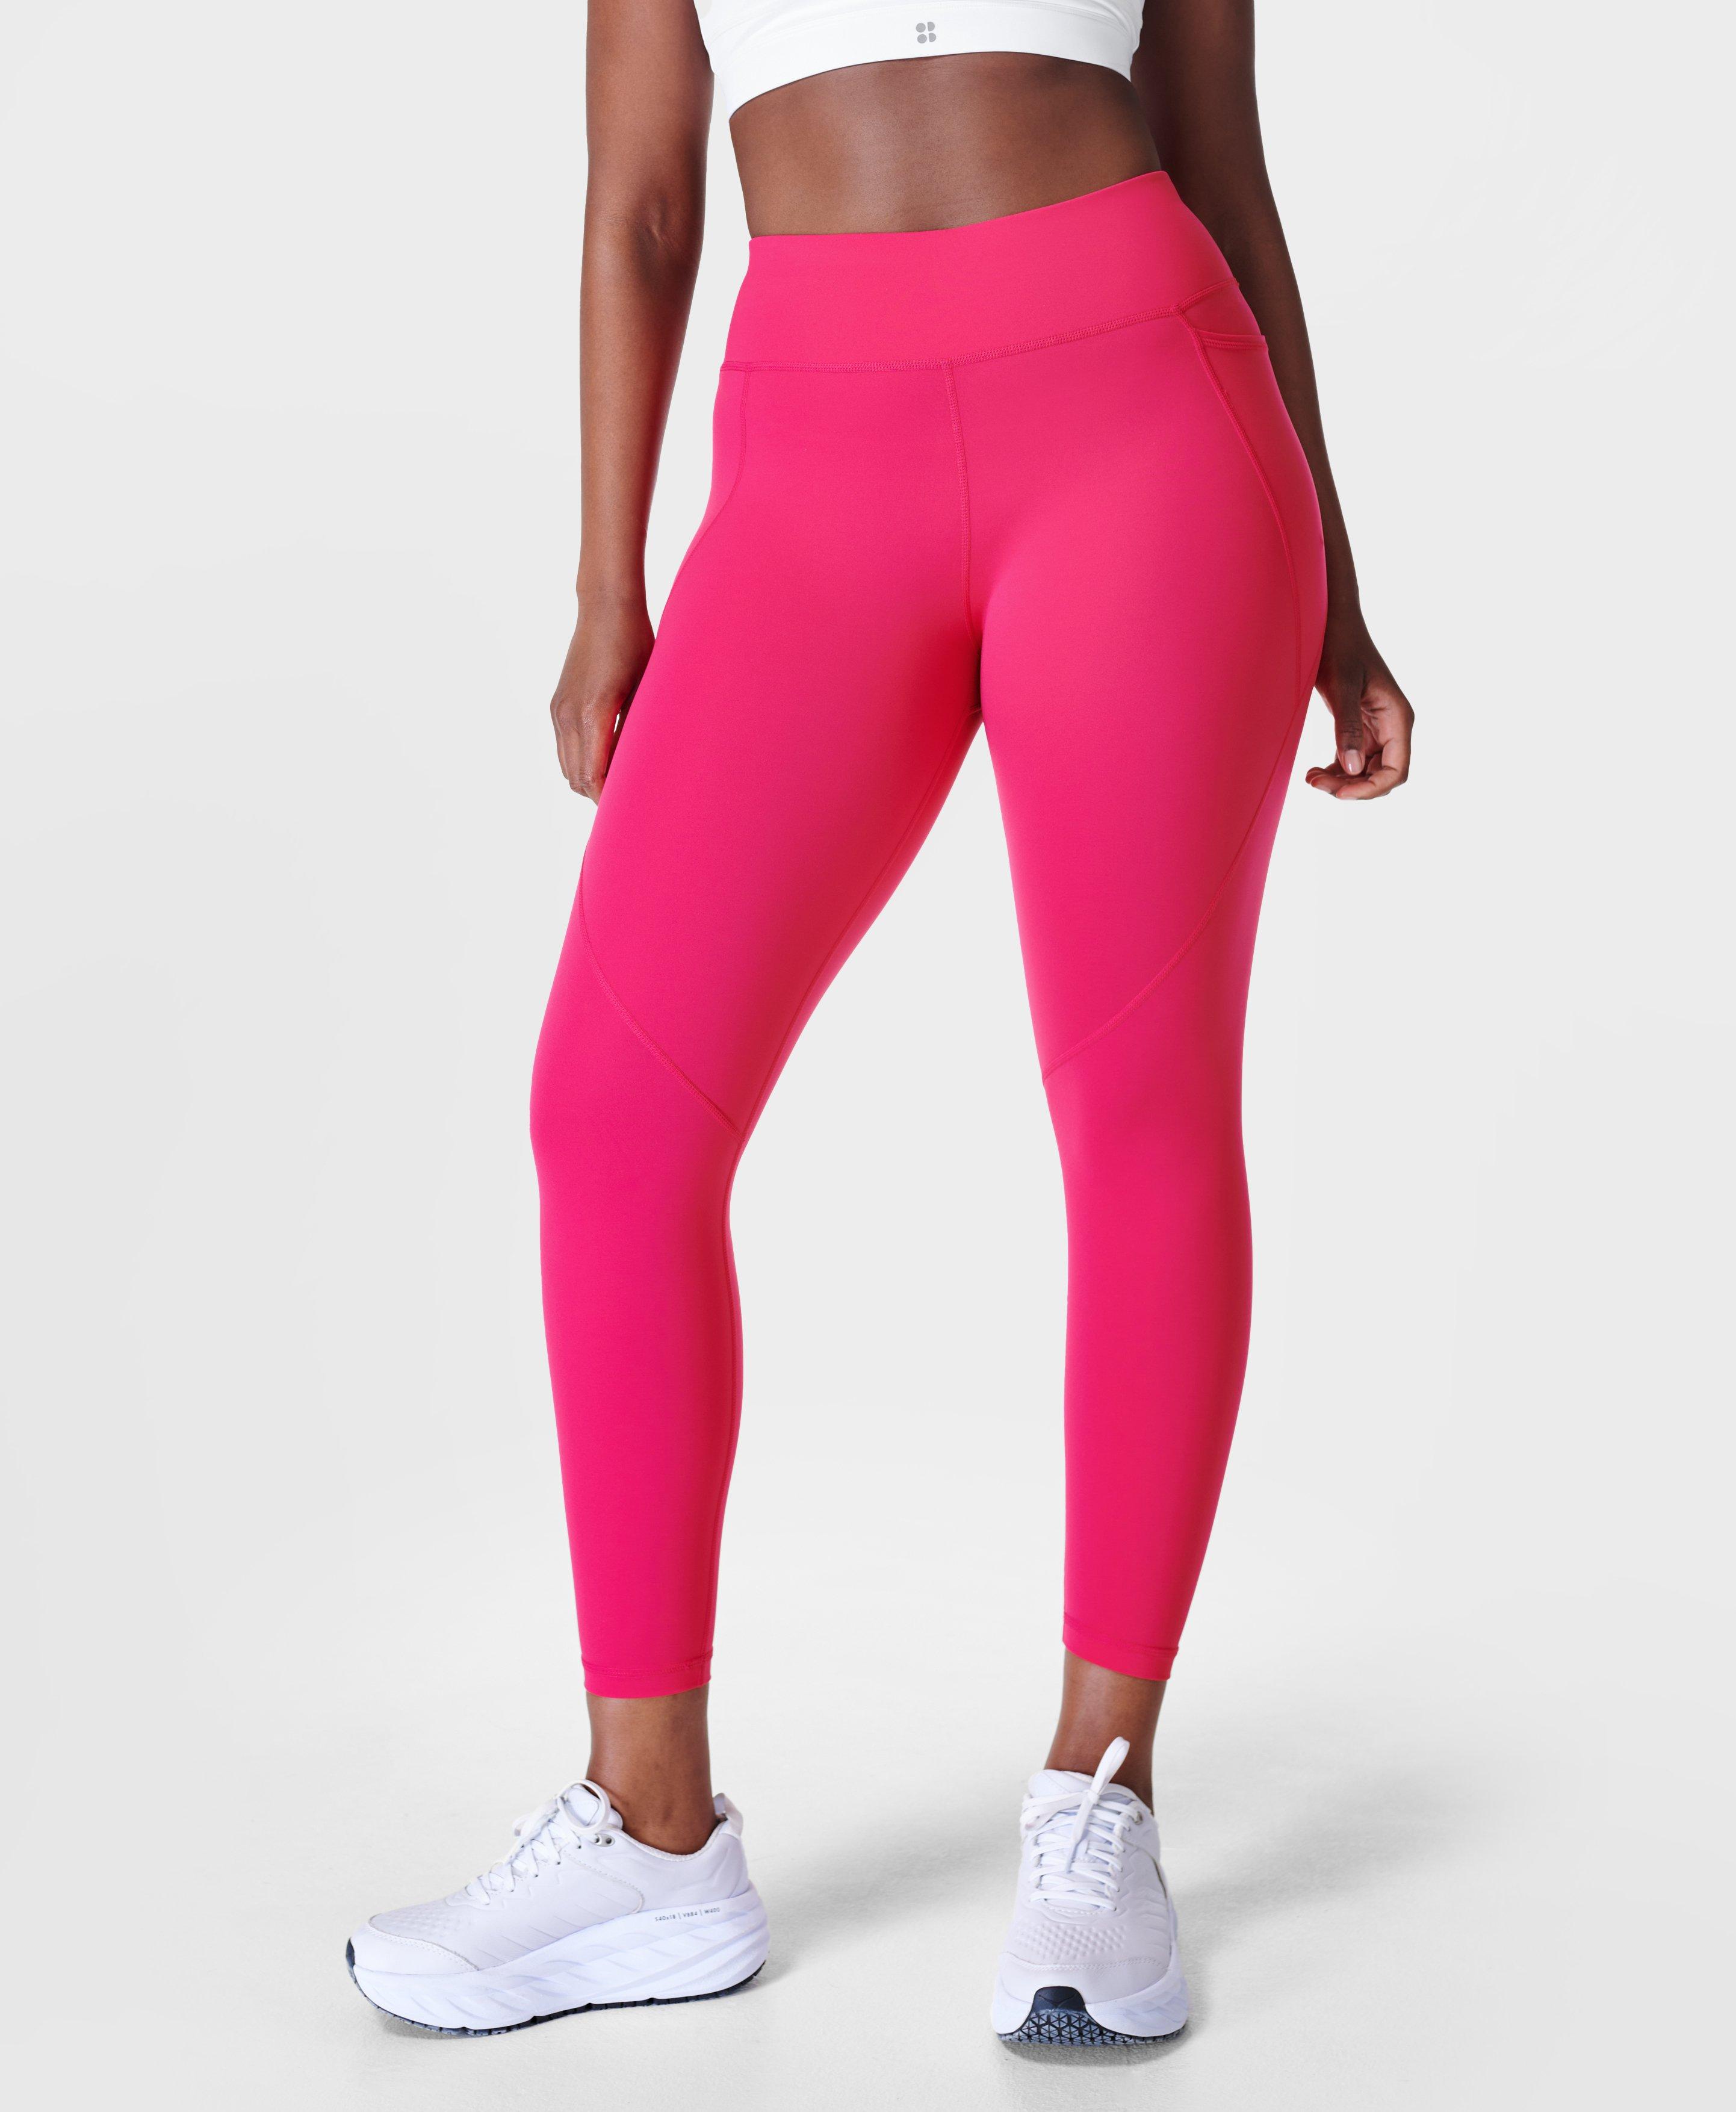 Power 7/8 Workout Leggings - Framboise Pink, Women's Leggings